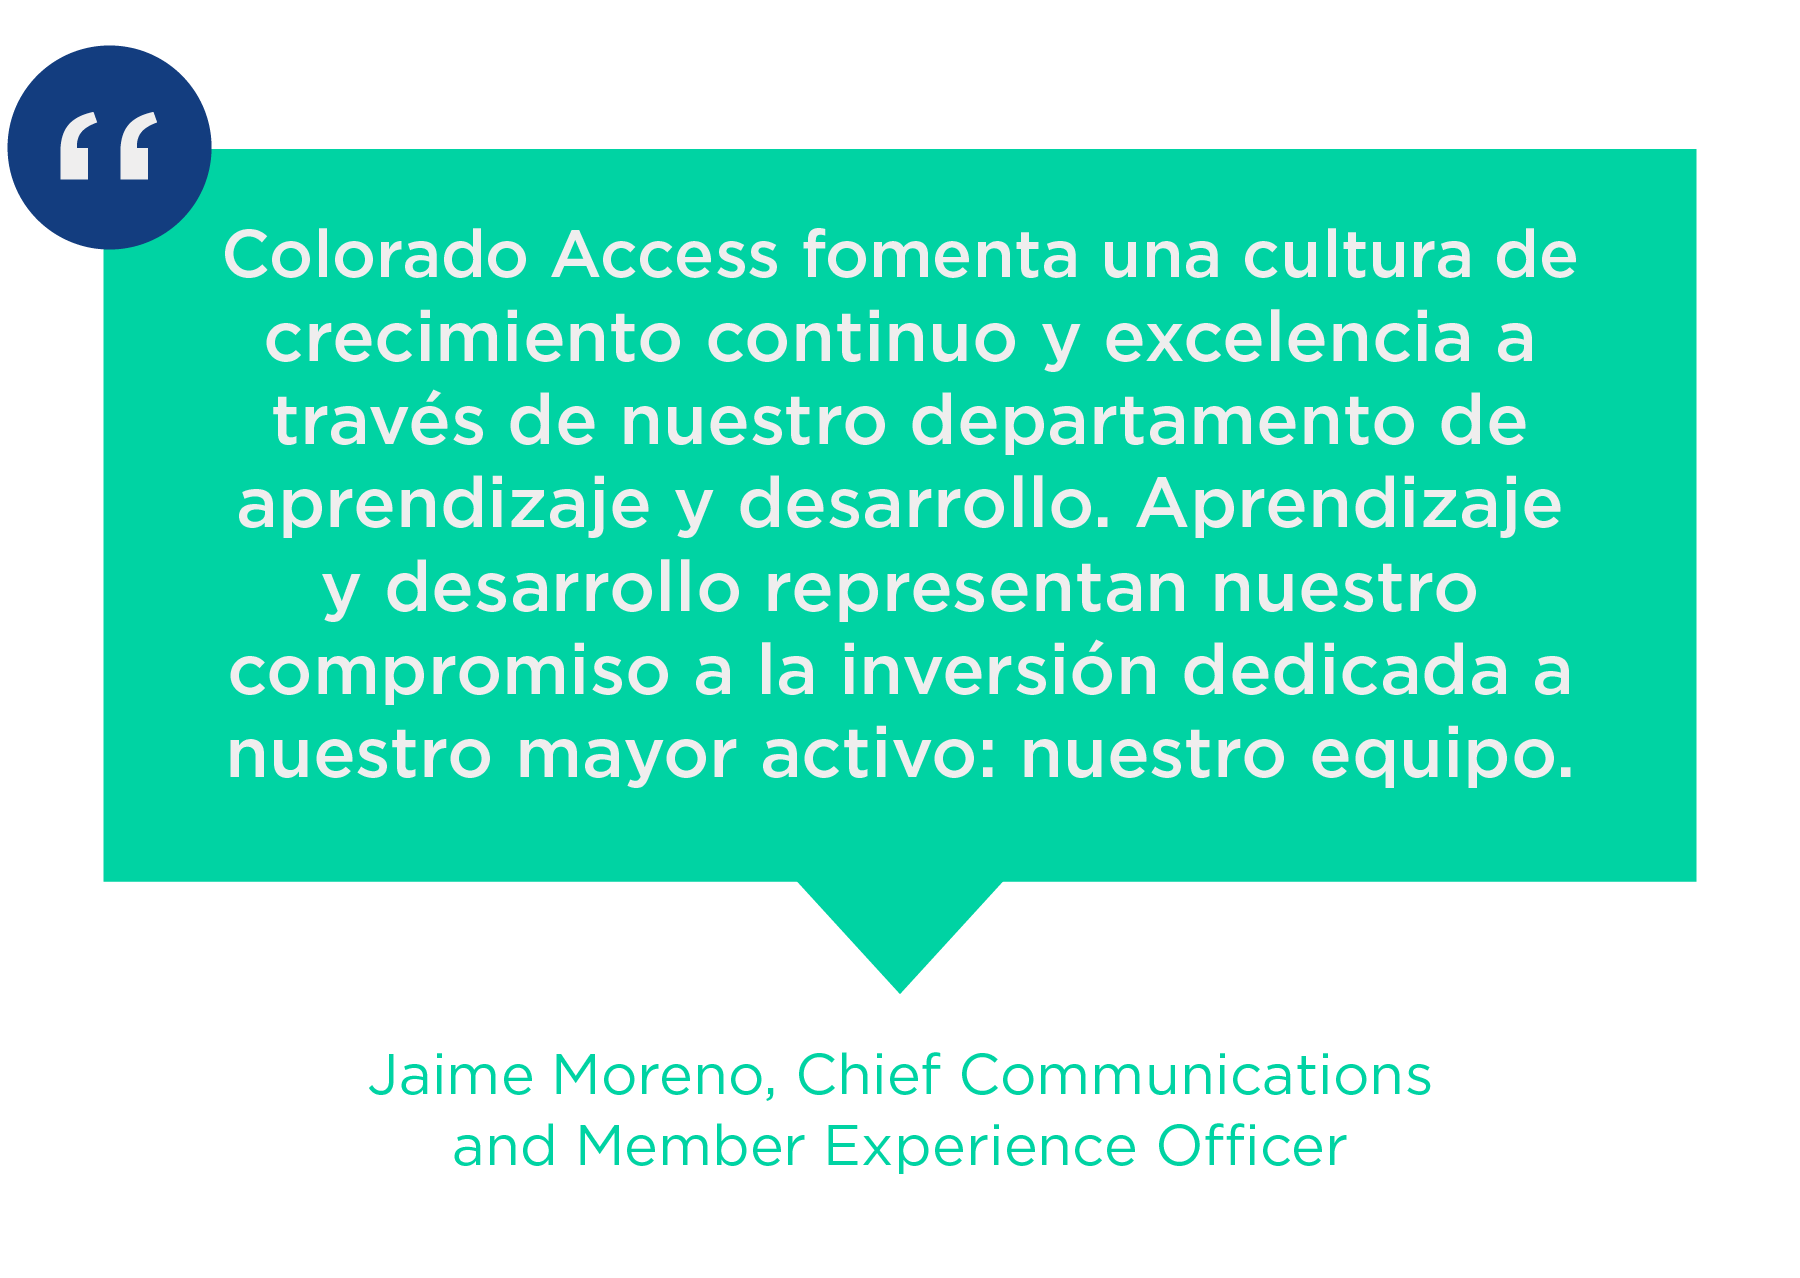 Colorado Access fomenta una cultura de crecimiento continuo y excelencia a través de nuestro departamento de aprendizaje y desarrollo. Aprendizaje y desarrollo representan nuestro compromiso a la inversión dedicada a nuestro mayor activo: nuestro equipo